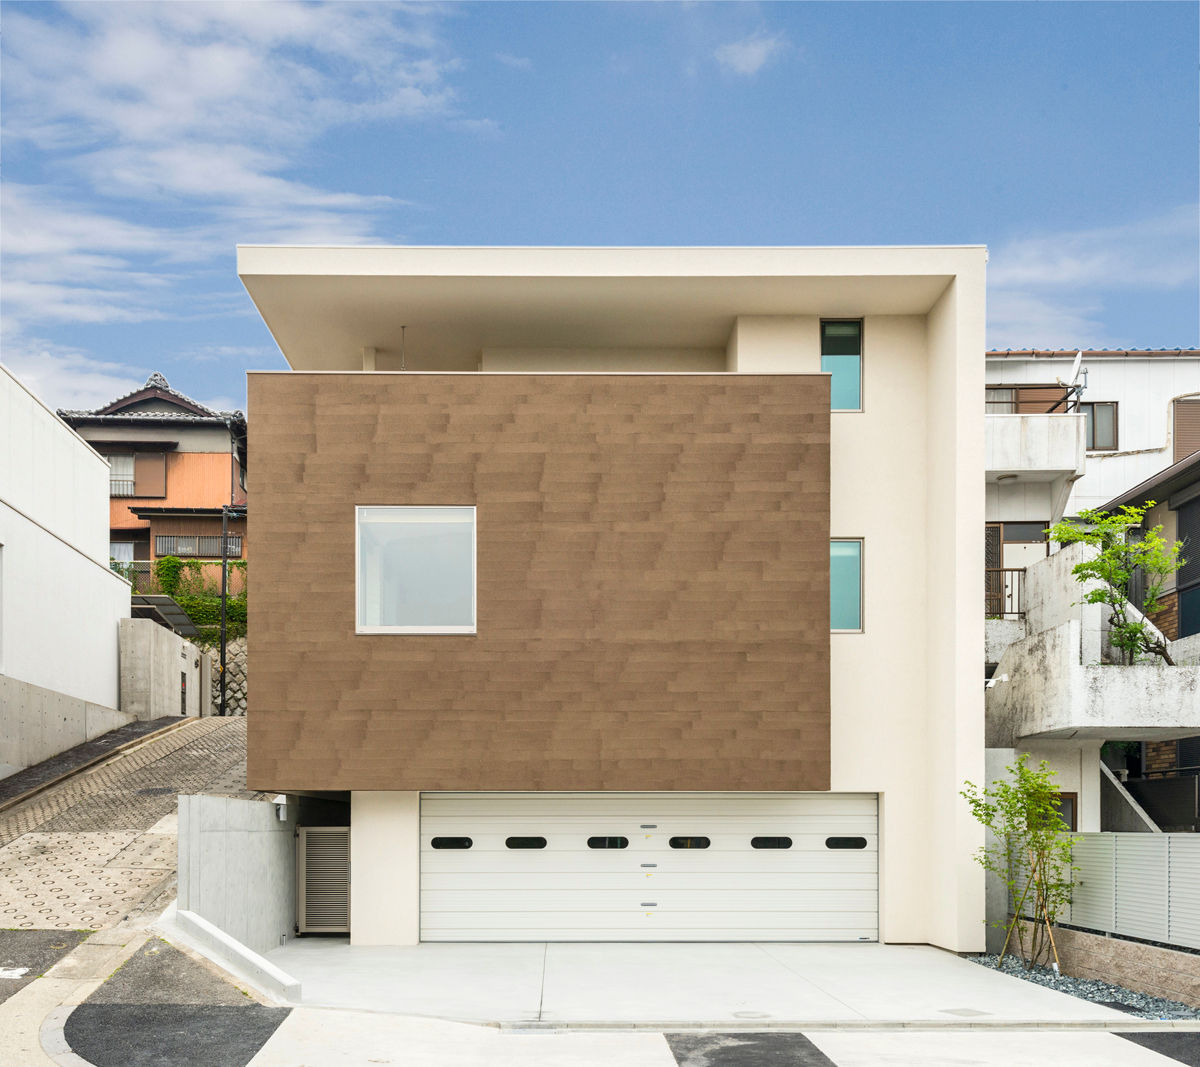 傾斜地に建つ家, Egawa Architectural Studio Egawa Architectural Studio Ausgefallene Häuser